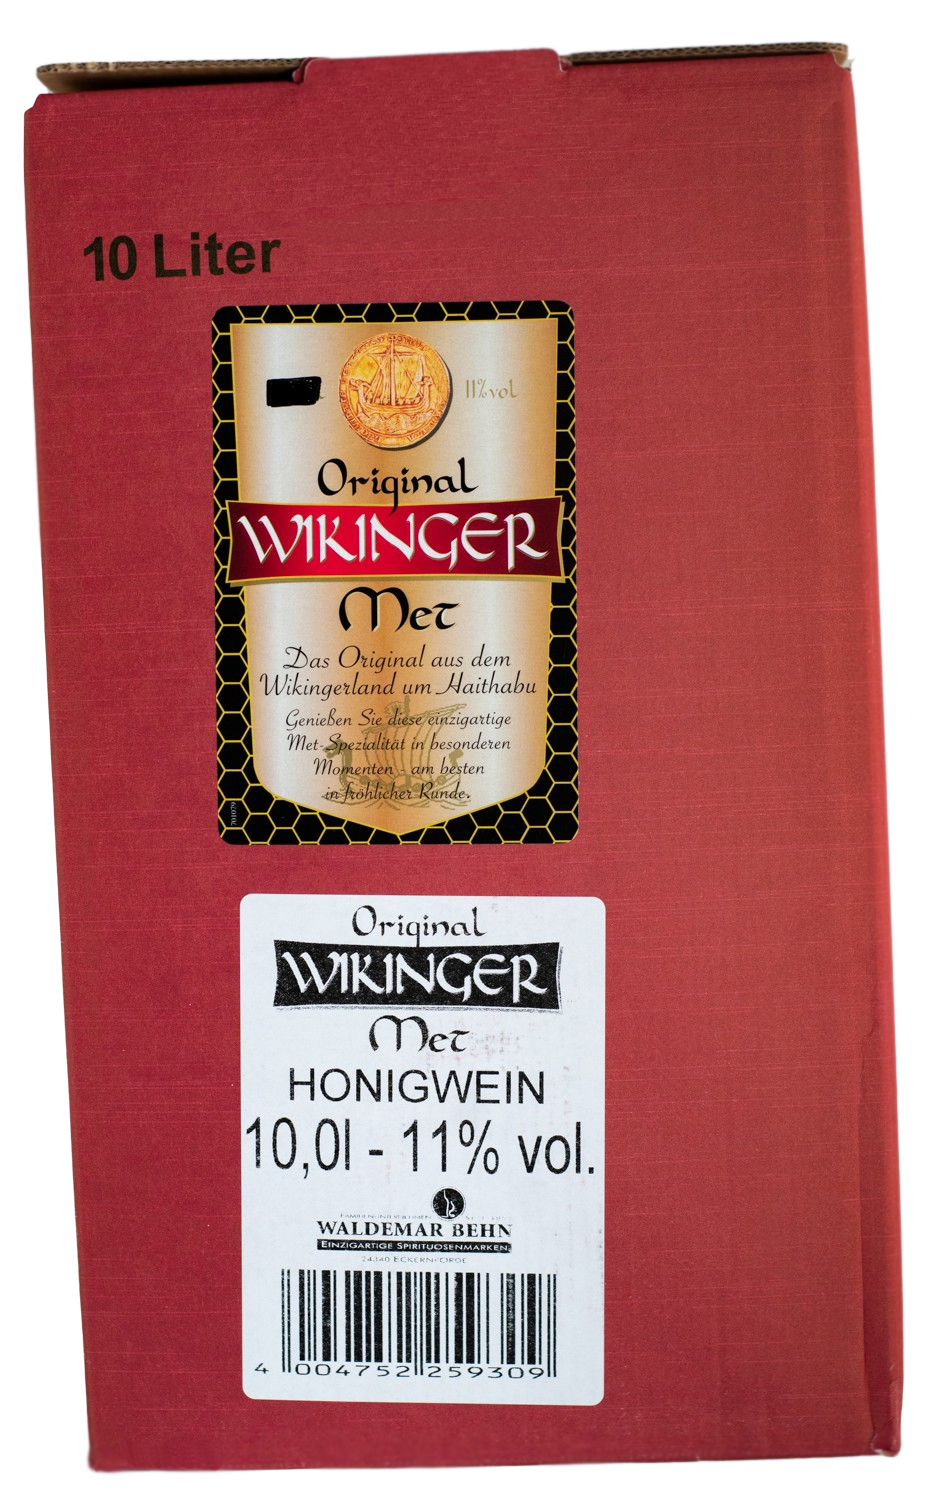 Original Wikinger Met 10 Liter Bag-Box - 10L 11% vol